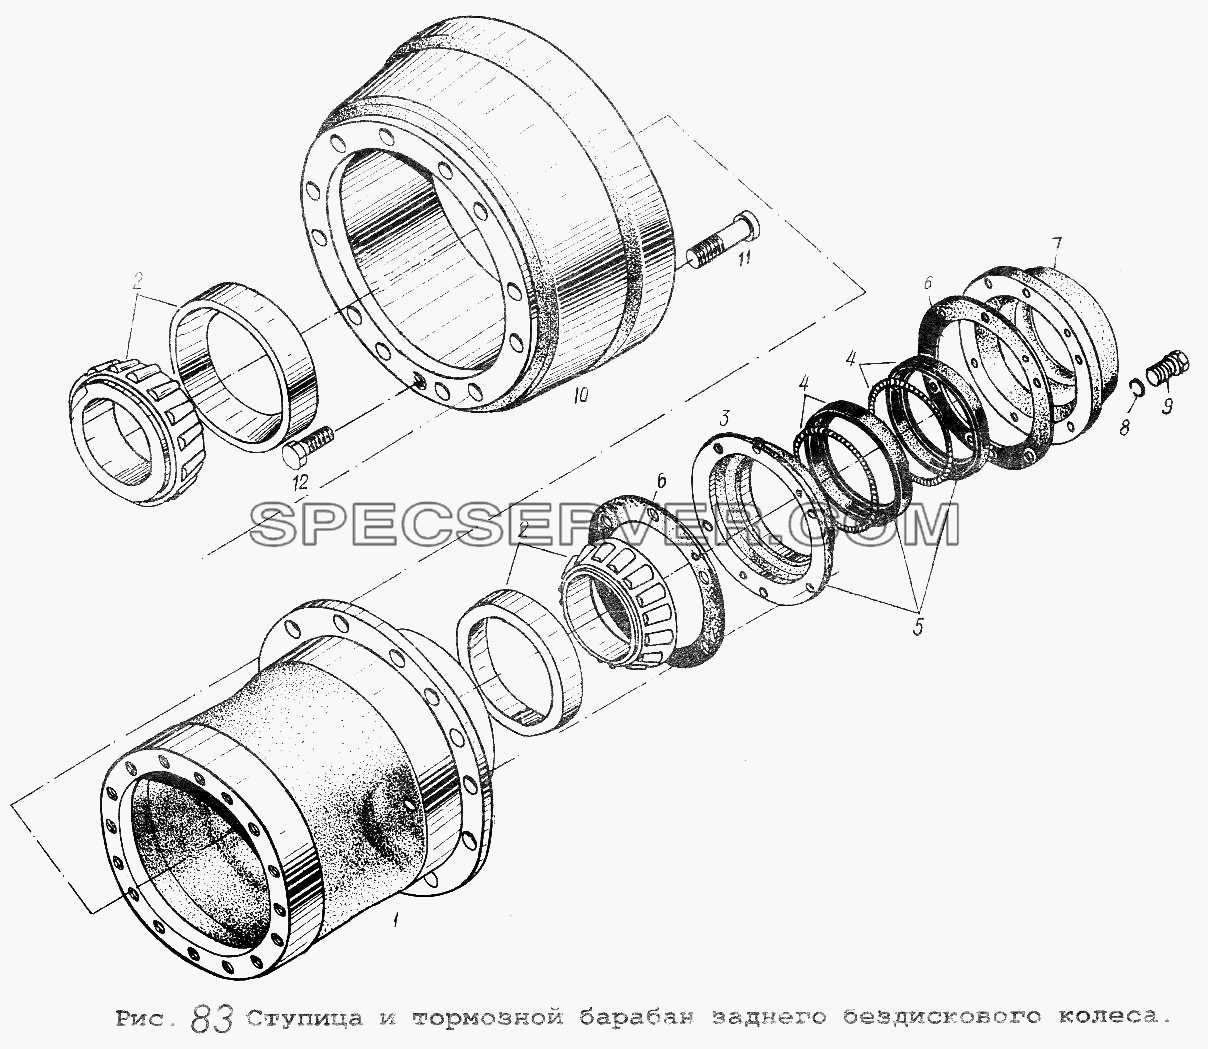 Ступица и тормозной барабан заднего бездискового колеса для МАЗ-54323 (список запасных частей)